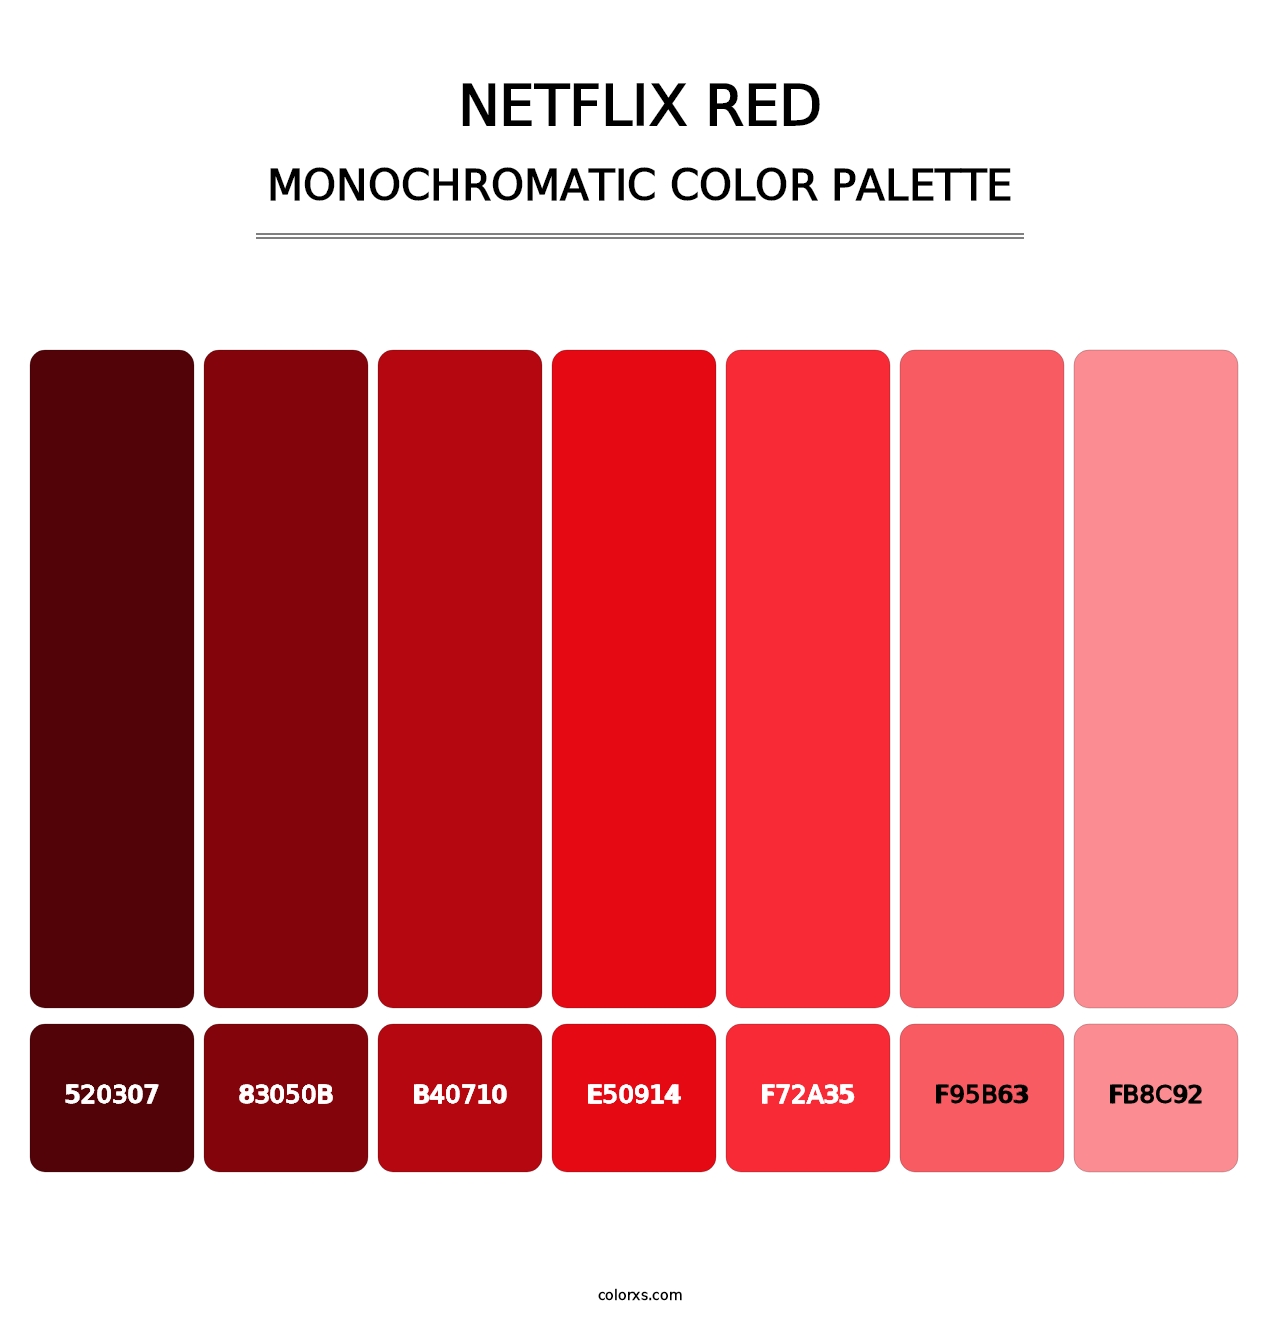 Netflix Red - Monochromatic Color Palette